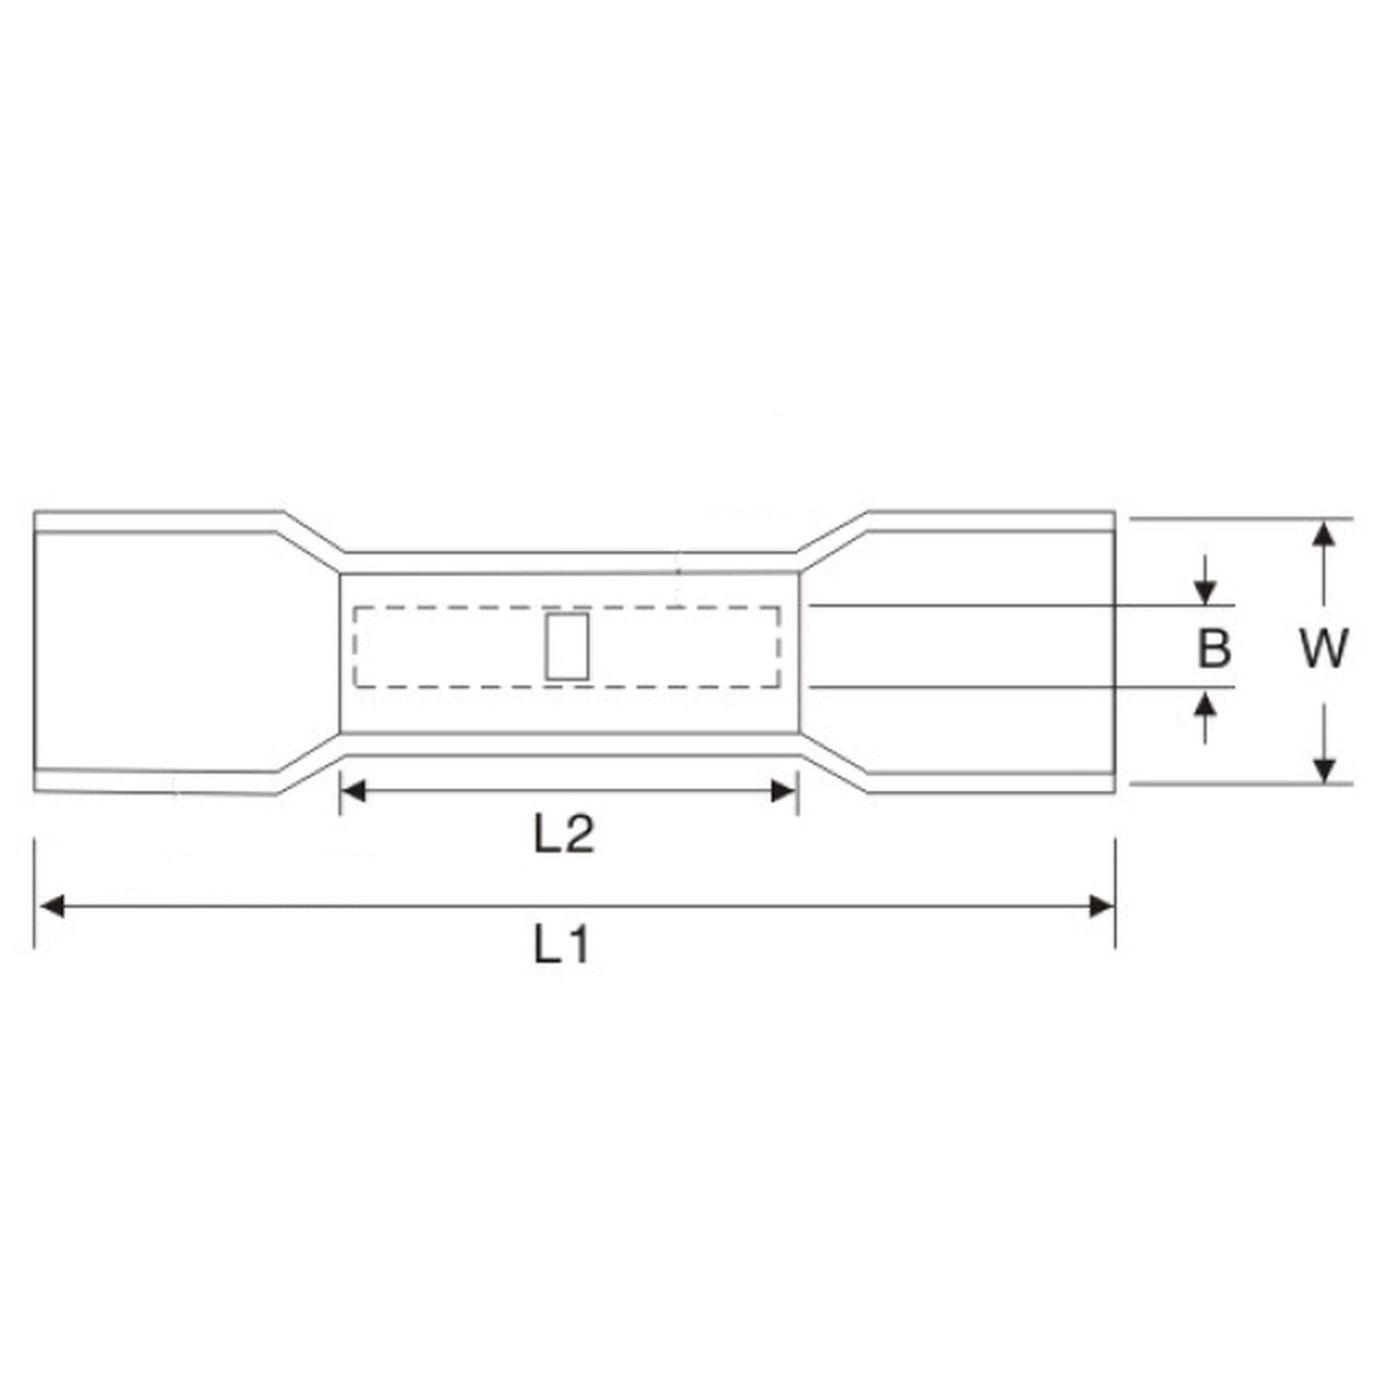 25x Schrumpf Stoßverbinder mit Schrumpfschlauch vollisoliert 0,5-1,5mm² Rot Quetschverbinder Messing verzinnt